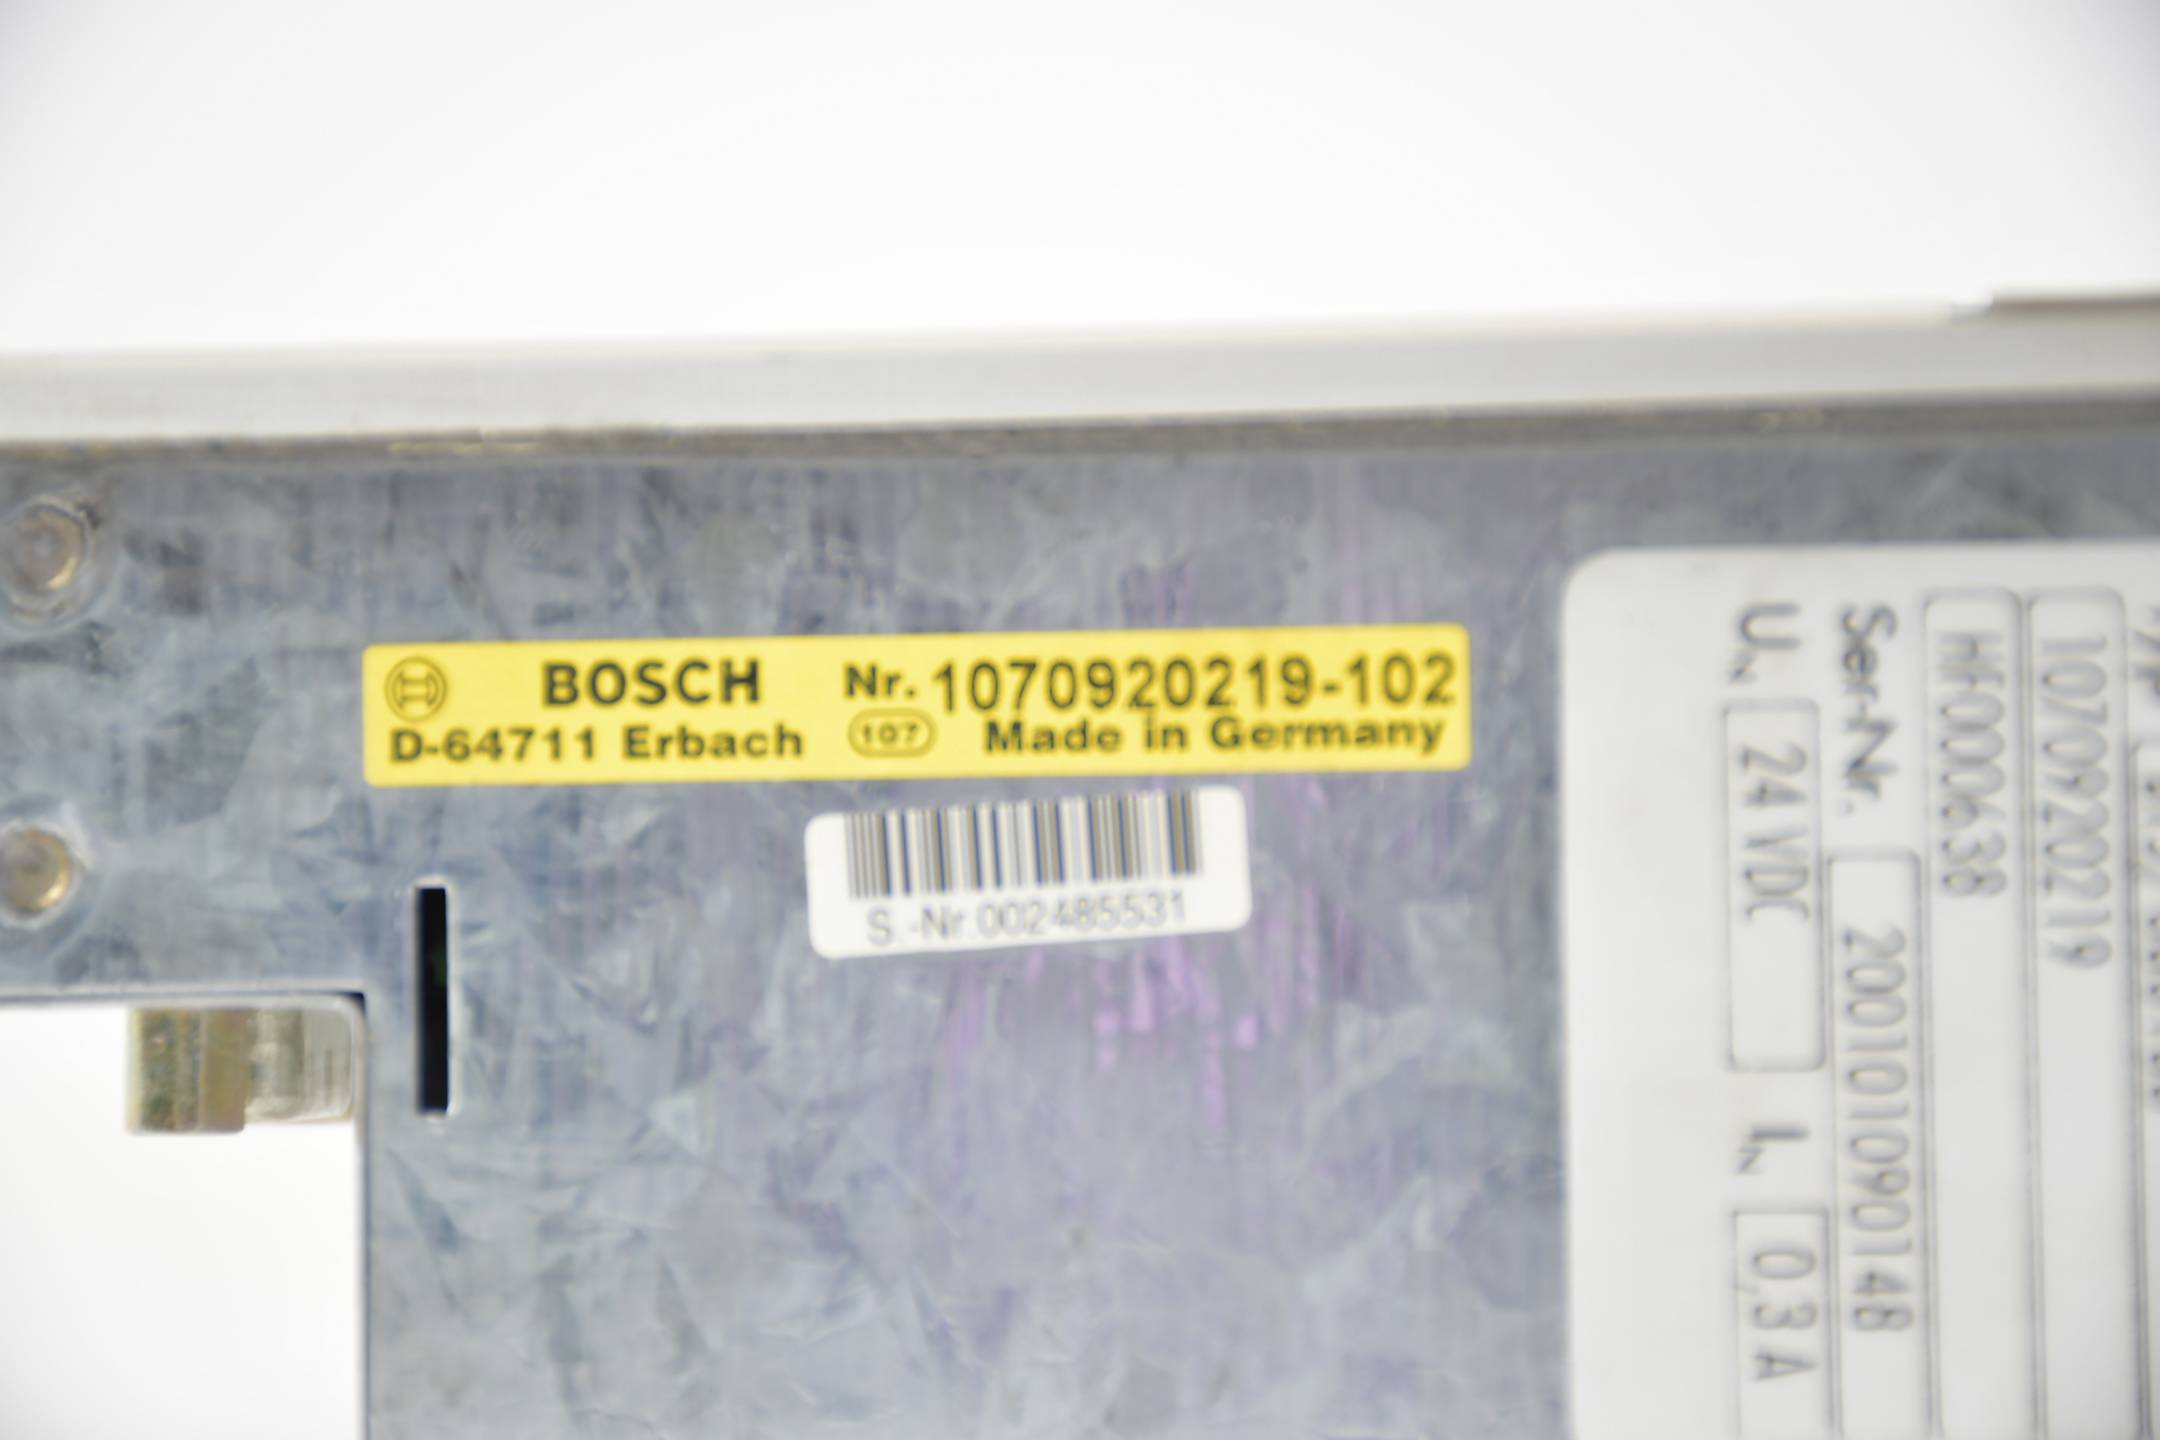 Bosch Sütron Bedienterminal BT 5 BT5/080100 ( 1070920219-102 ) HF000638 